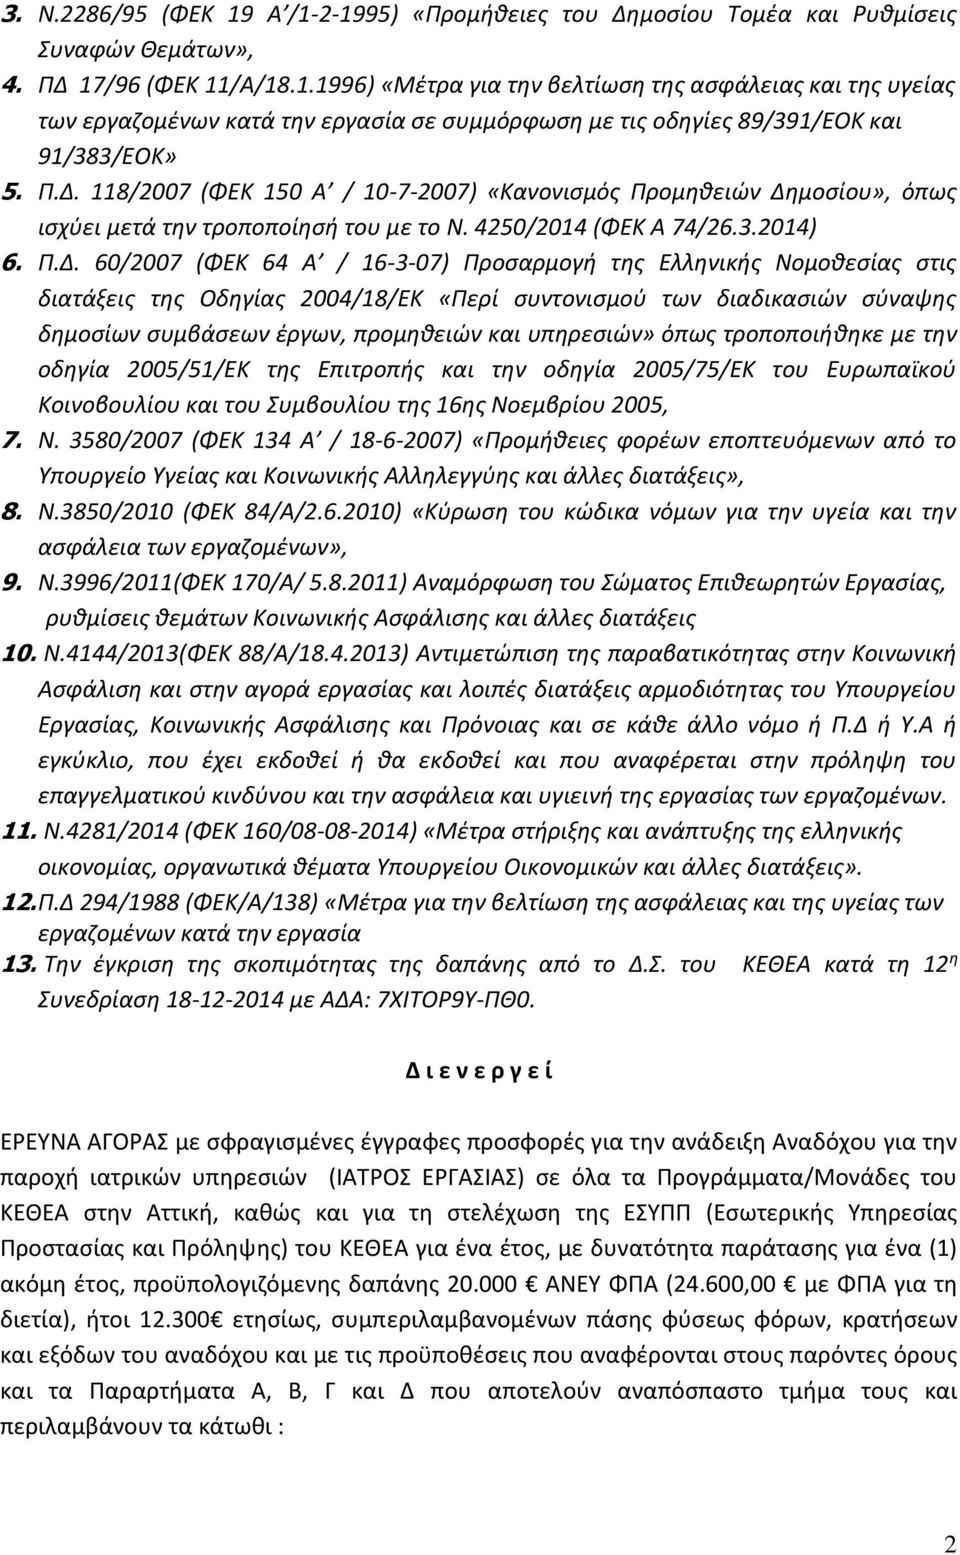 της Ελληνικής Νομοθεσίας στις διατάξεις της Οδηγίας 2004/18/ΕΚ «Περί συντονισμού των διαδικασιών σύναψης δημοσίων συμβάσεων έργων, προμηθειών και υπηρεσιών» όπως τροποποιήθηκε με την οδηγία